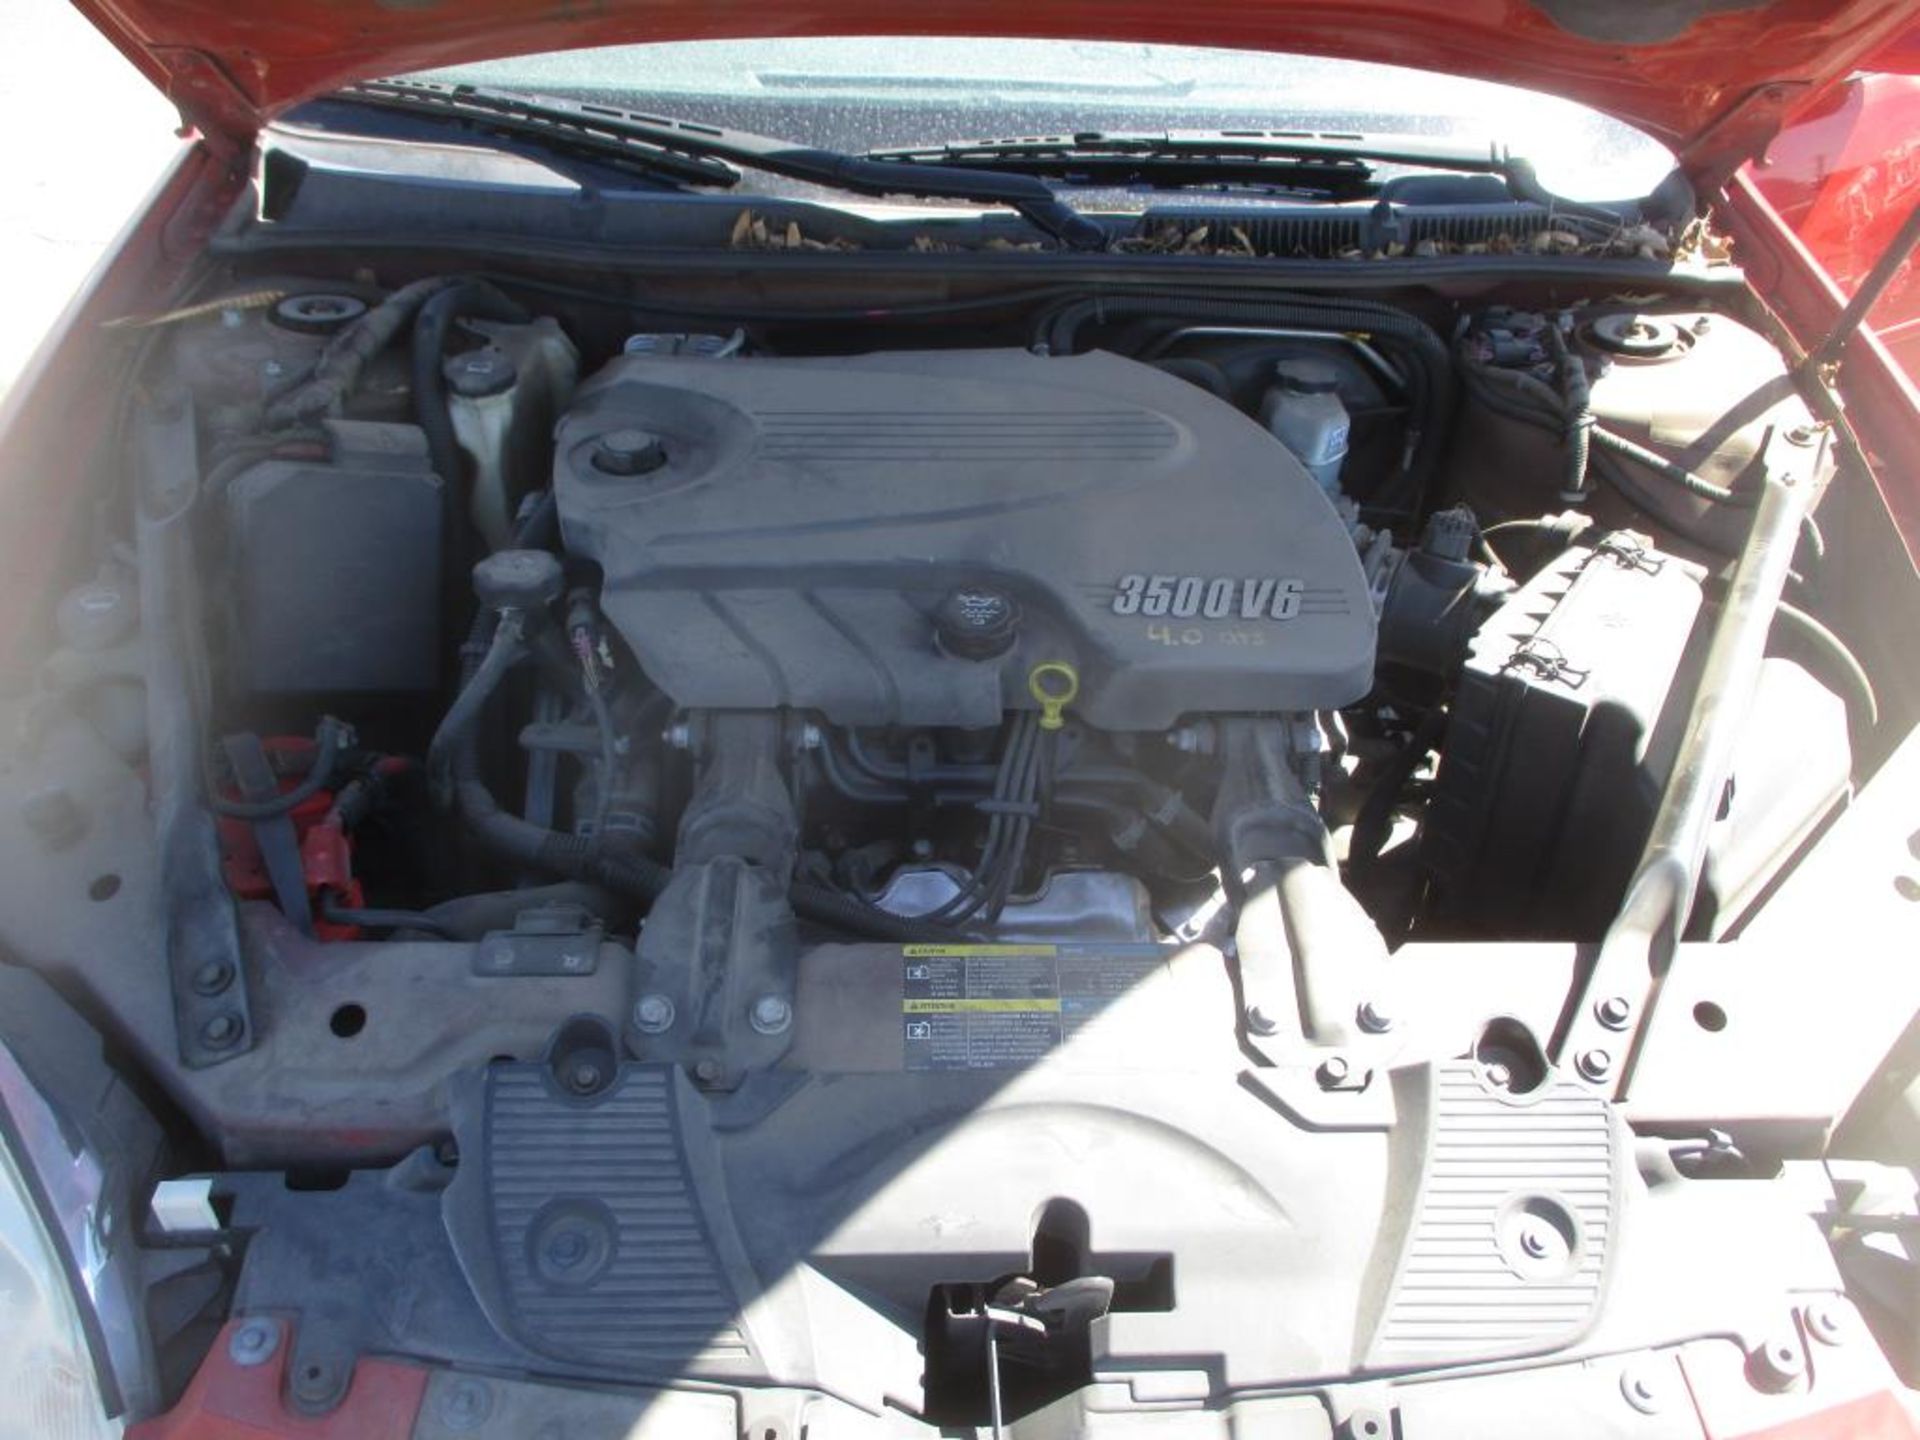 2006 Chevrolet Impala - Image 7 of 11